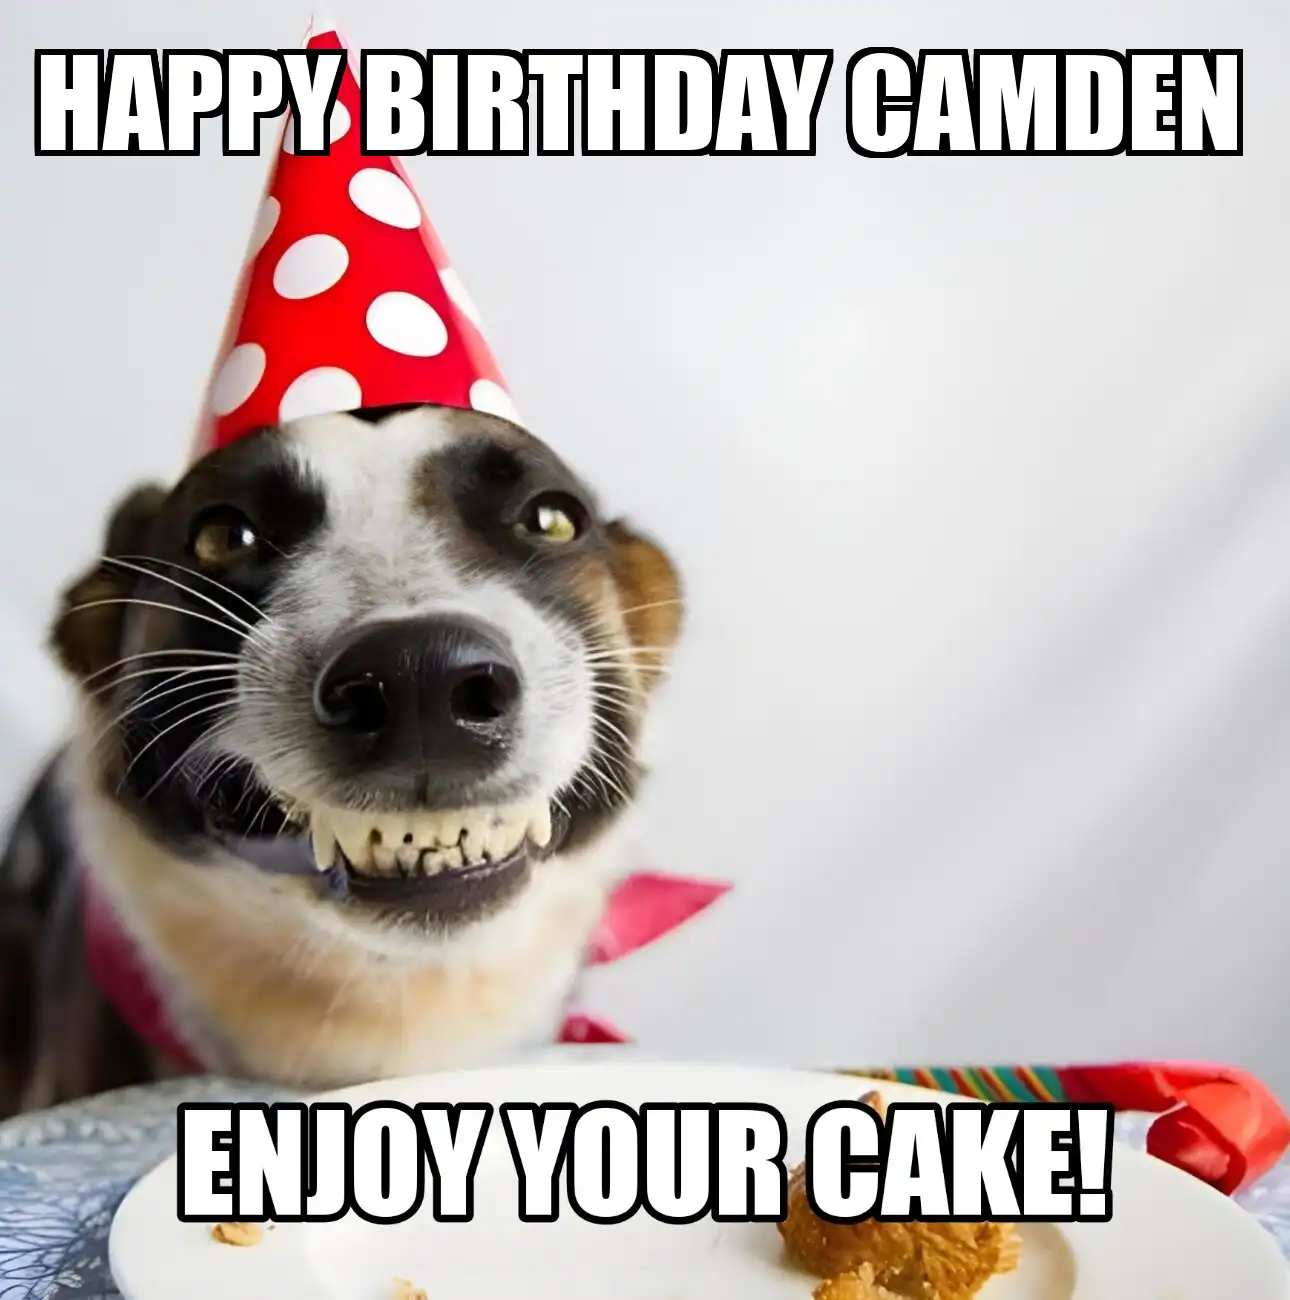 Happy Birthday Camden Enjoy Your Cake Dog Meme